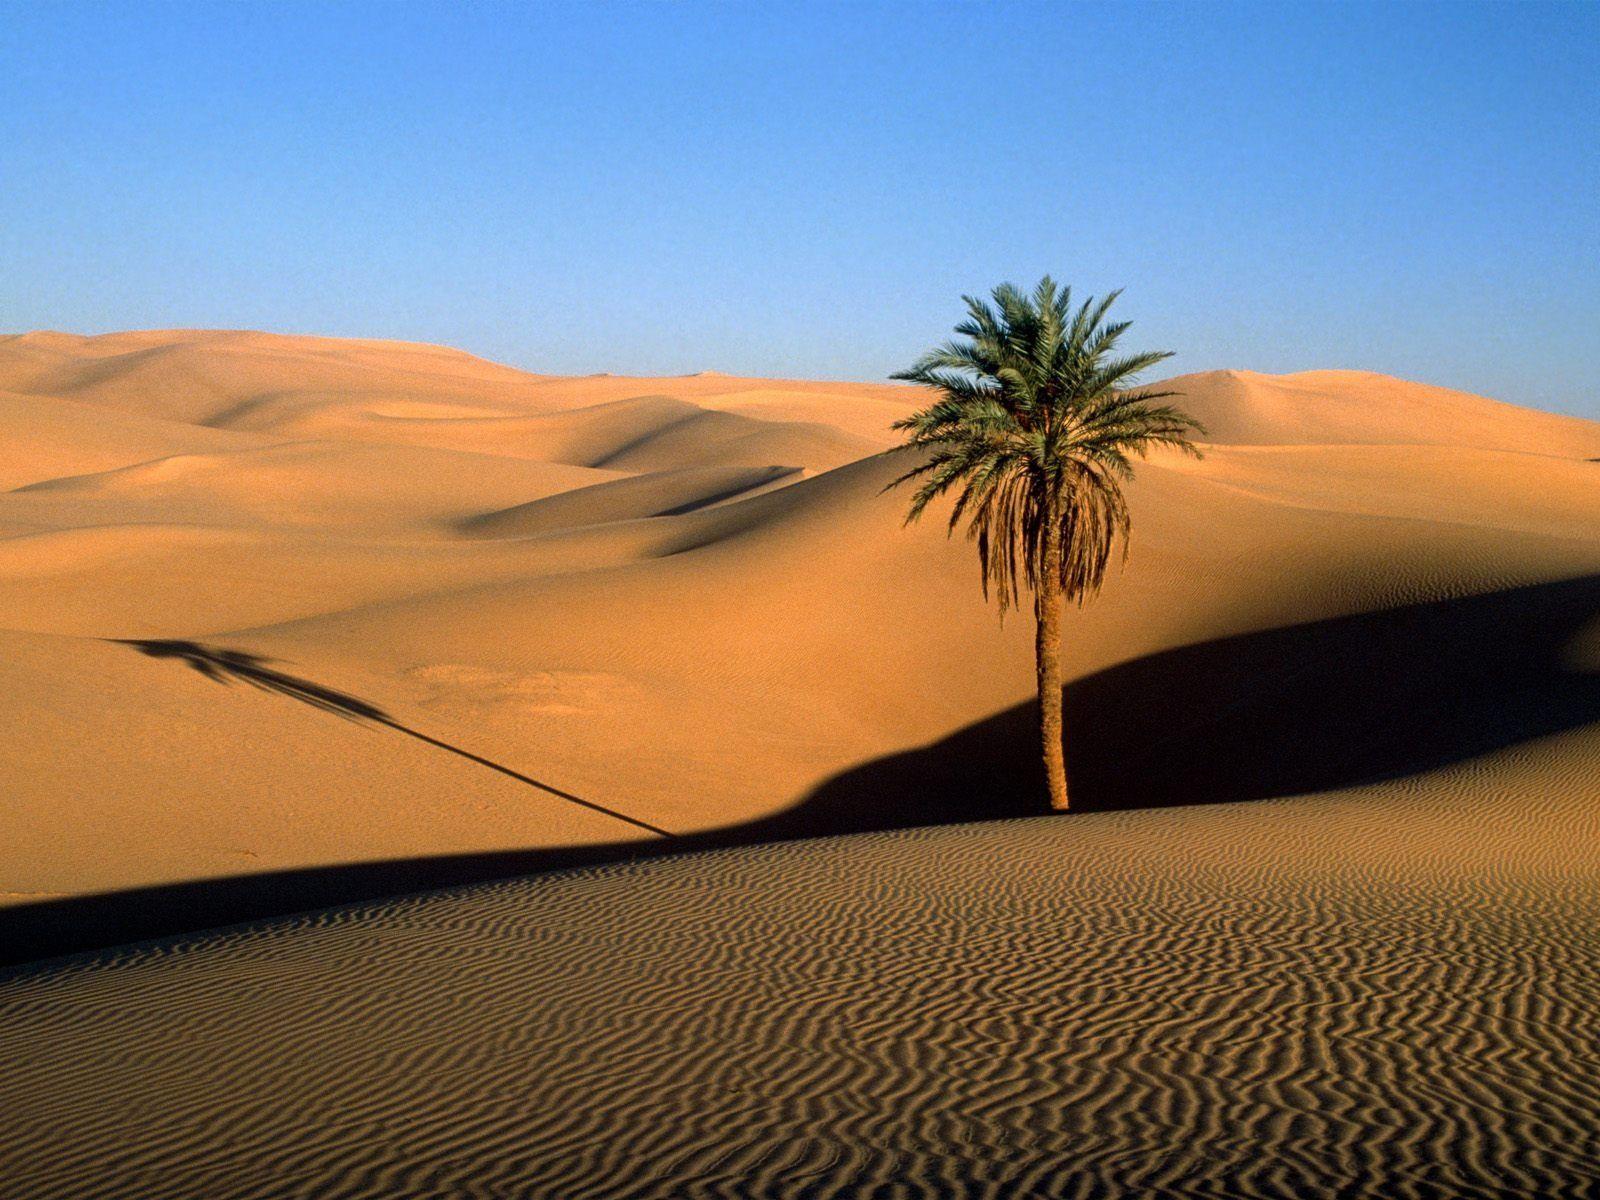 Arabian Desert Pictures Wallpapers